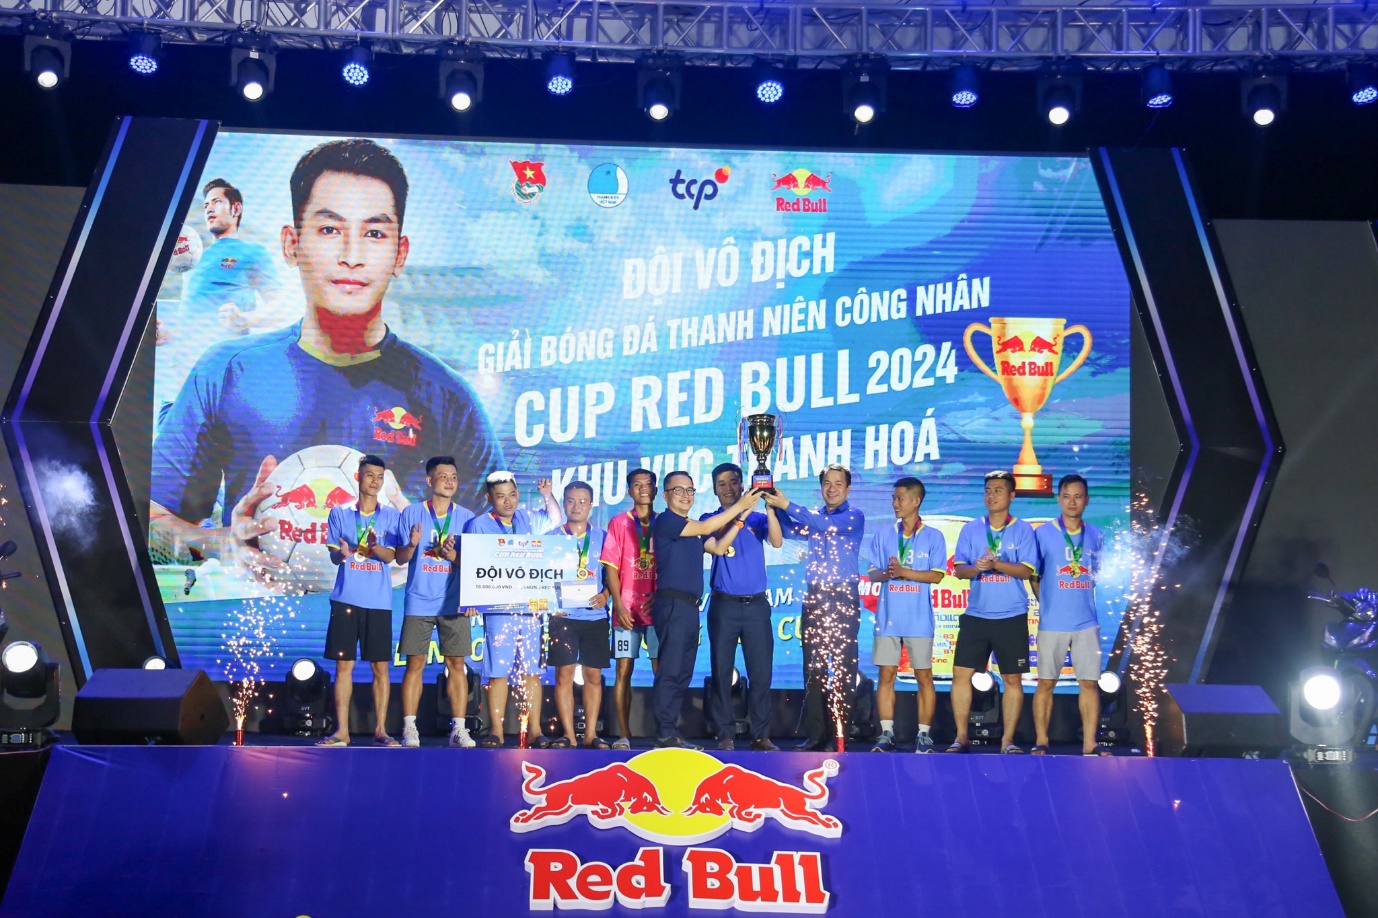 Ông Nguyễn Thanh Huân trao cúp cho đội bóng vô địch trong khuôn khổ Giải bóng đá thanh niên công nhân - Cup Red Bull 2024